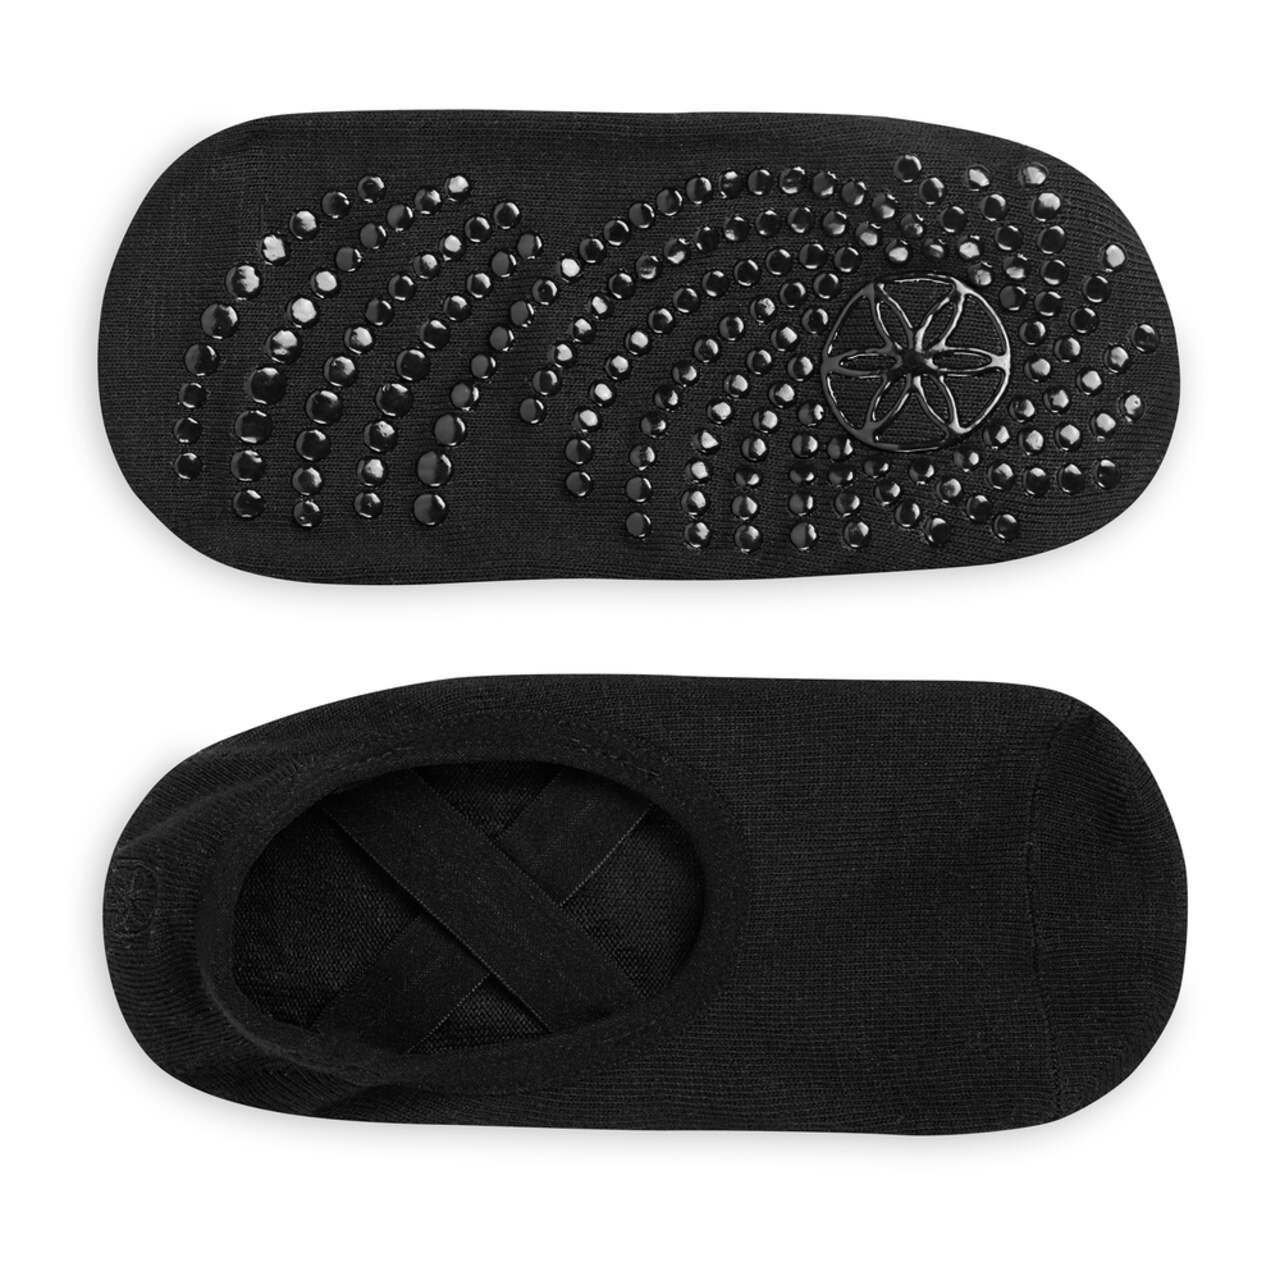 SISSEL® Yoga Socks / Yoga Socken in schwarz